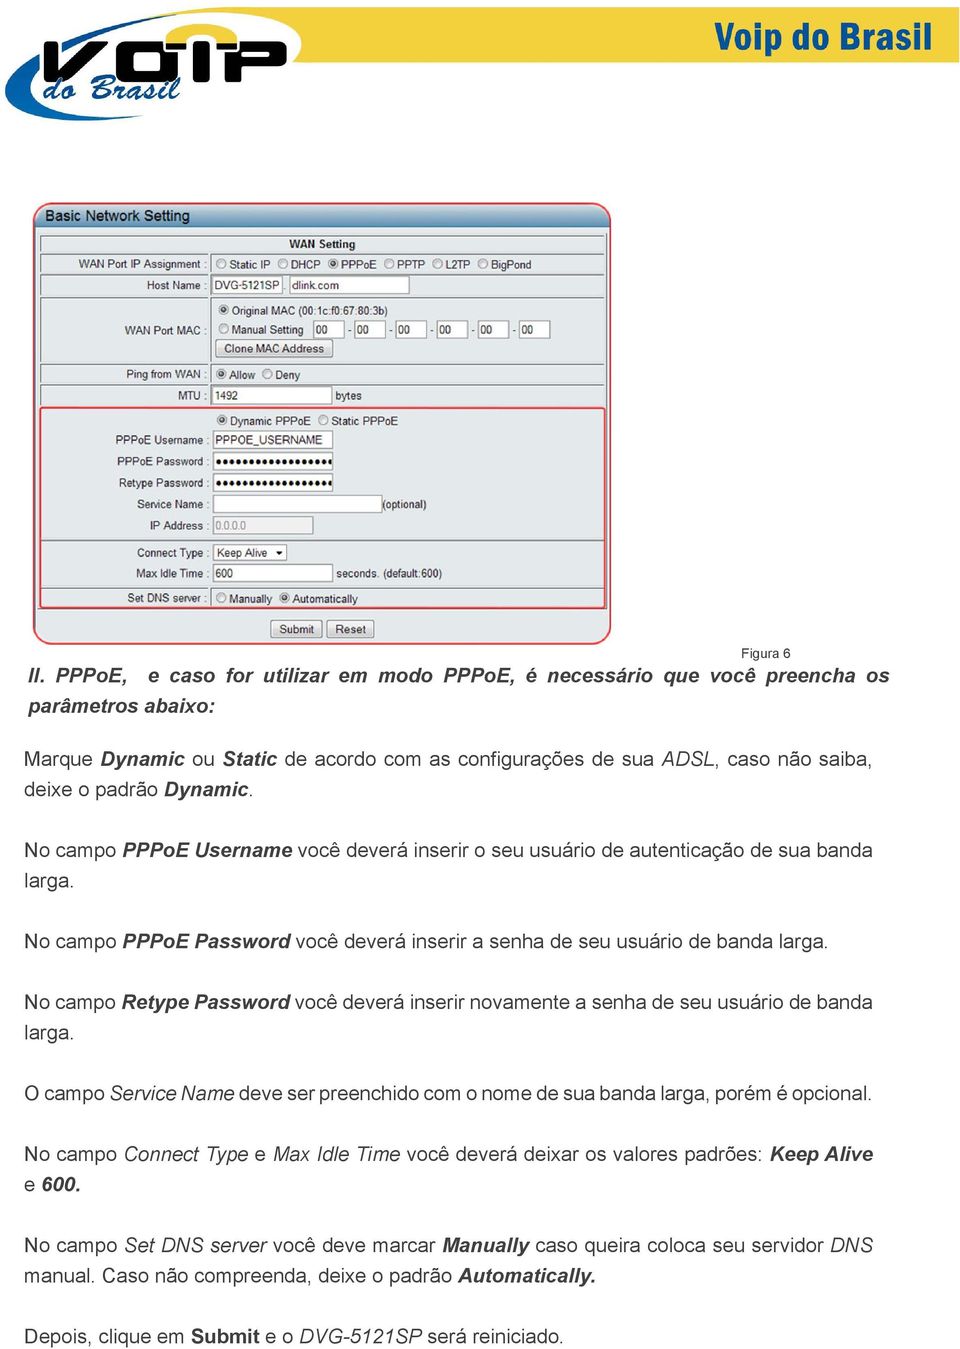 Dynamic. No campo PPPoE Username você deverá inserir o seu usuário de autenticação de sua banda larga. No campo PPPoE Password você deverá inserir a senha de seu usuário de banda larga.